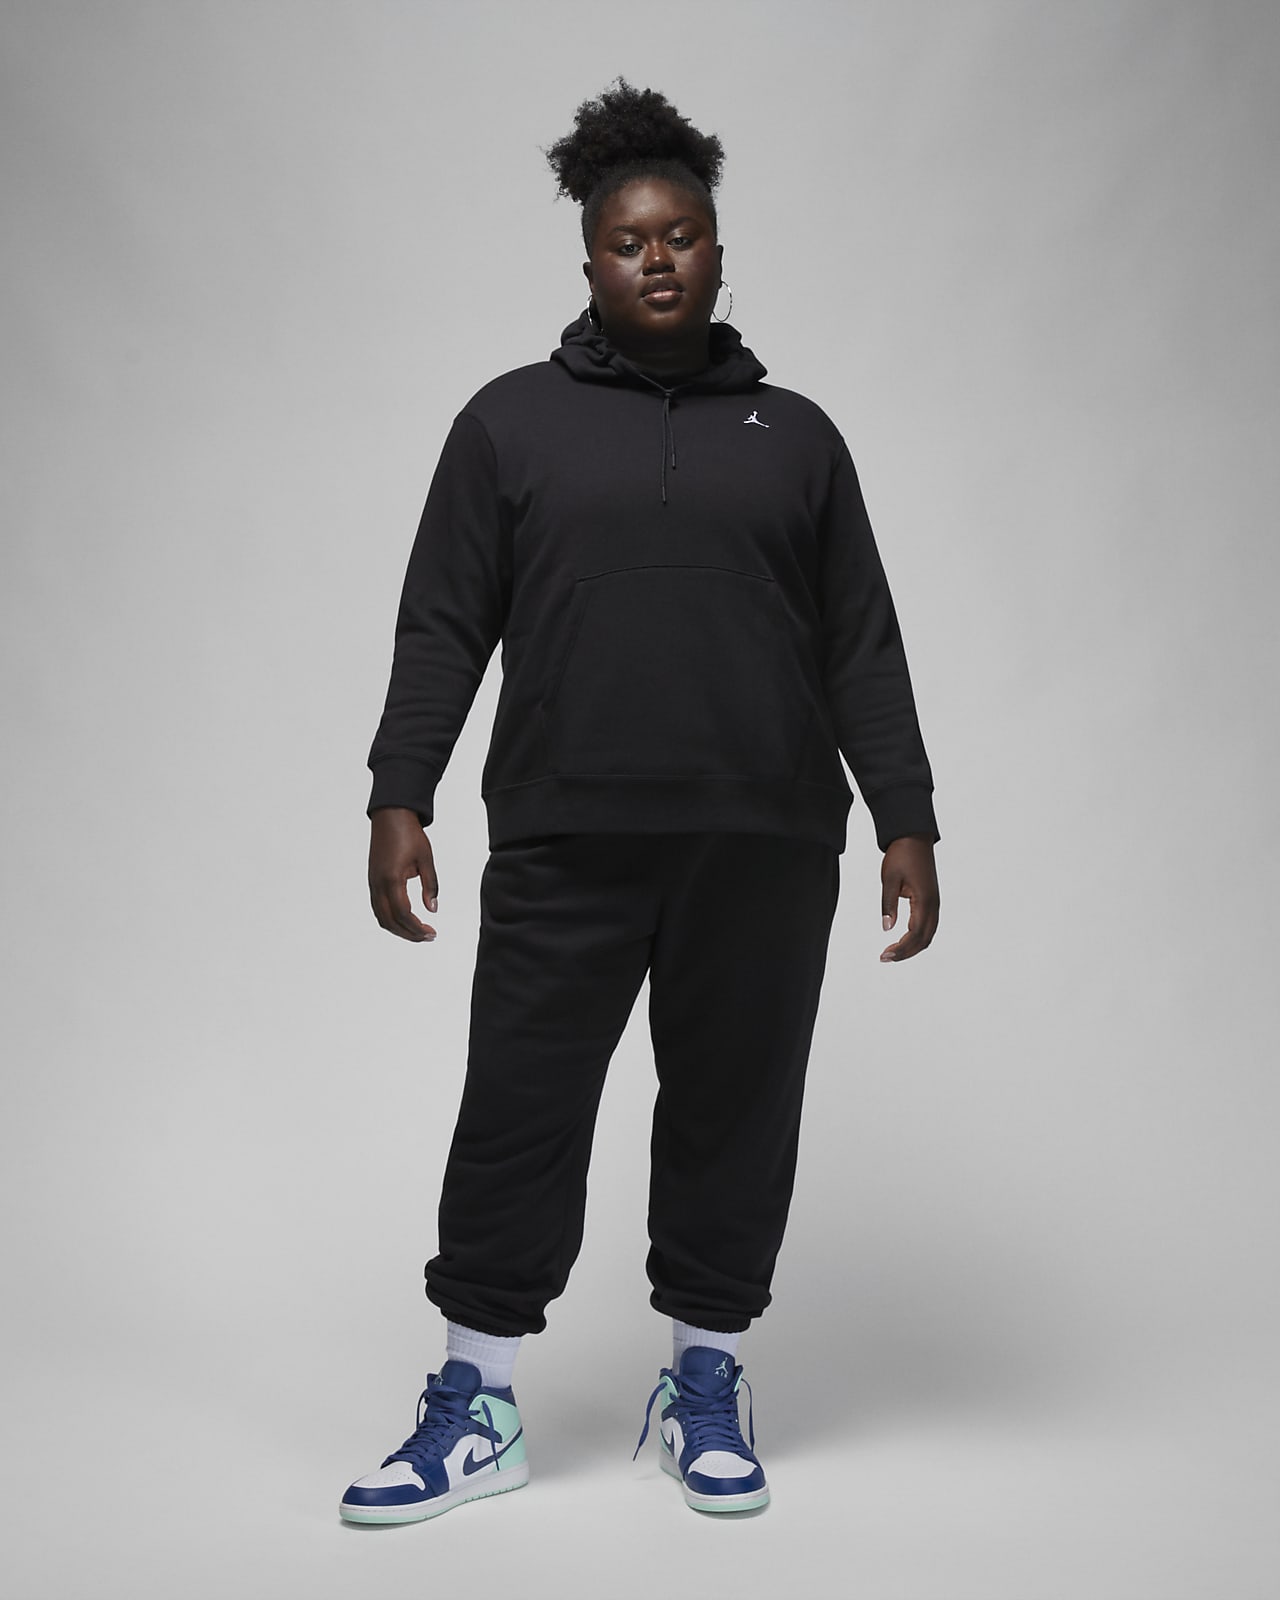 Air Jordan Womens Pullover Hoodie Sweatshirt Size 2X Black Loose Fit